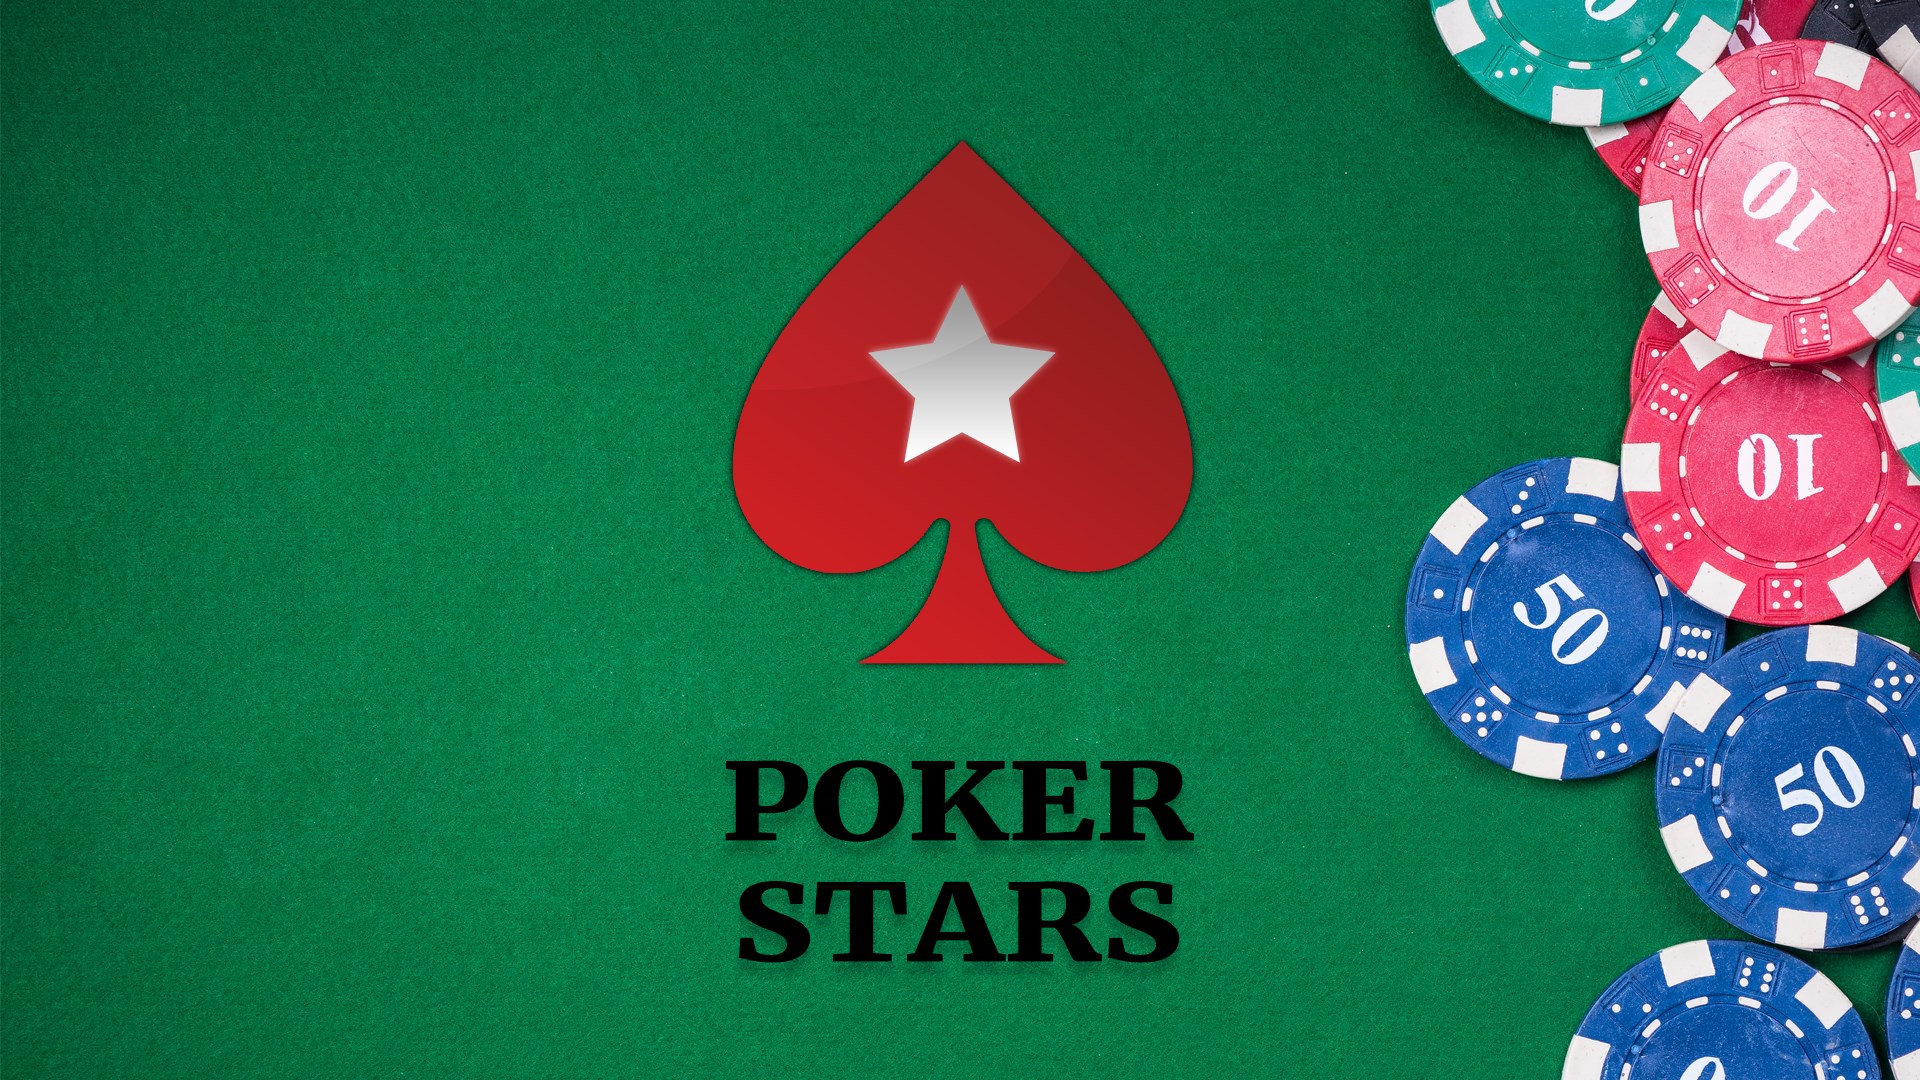 Texas hold em poker online holdem poker stars win